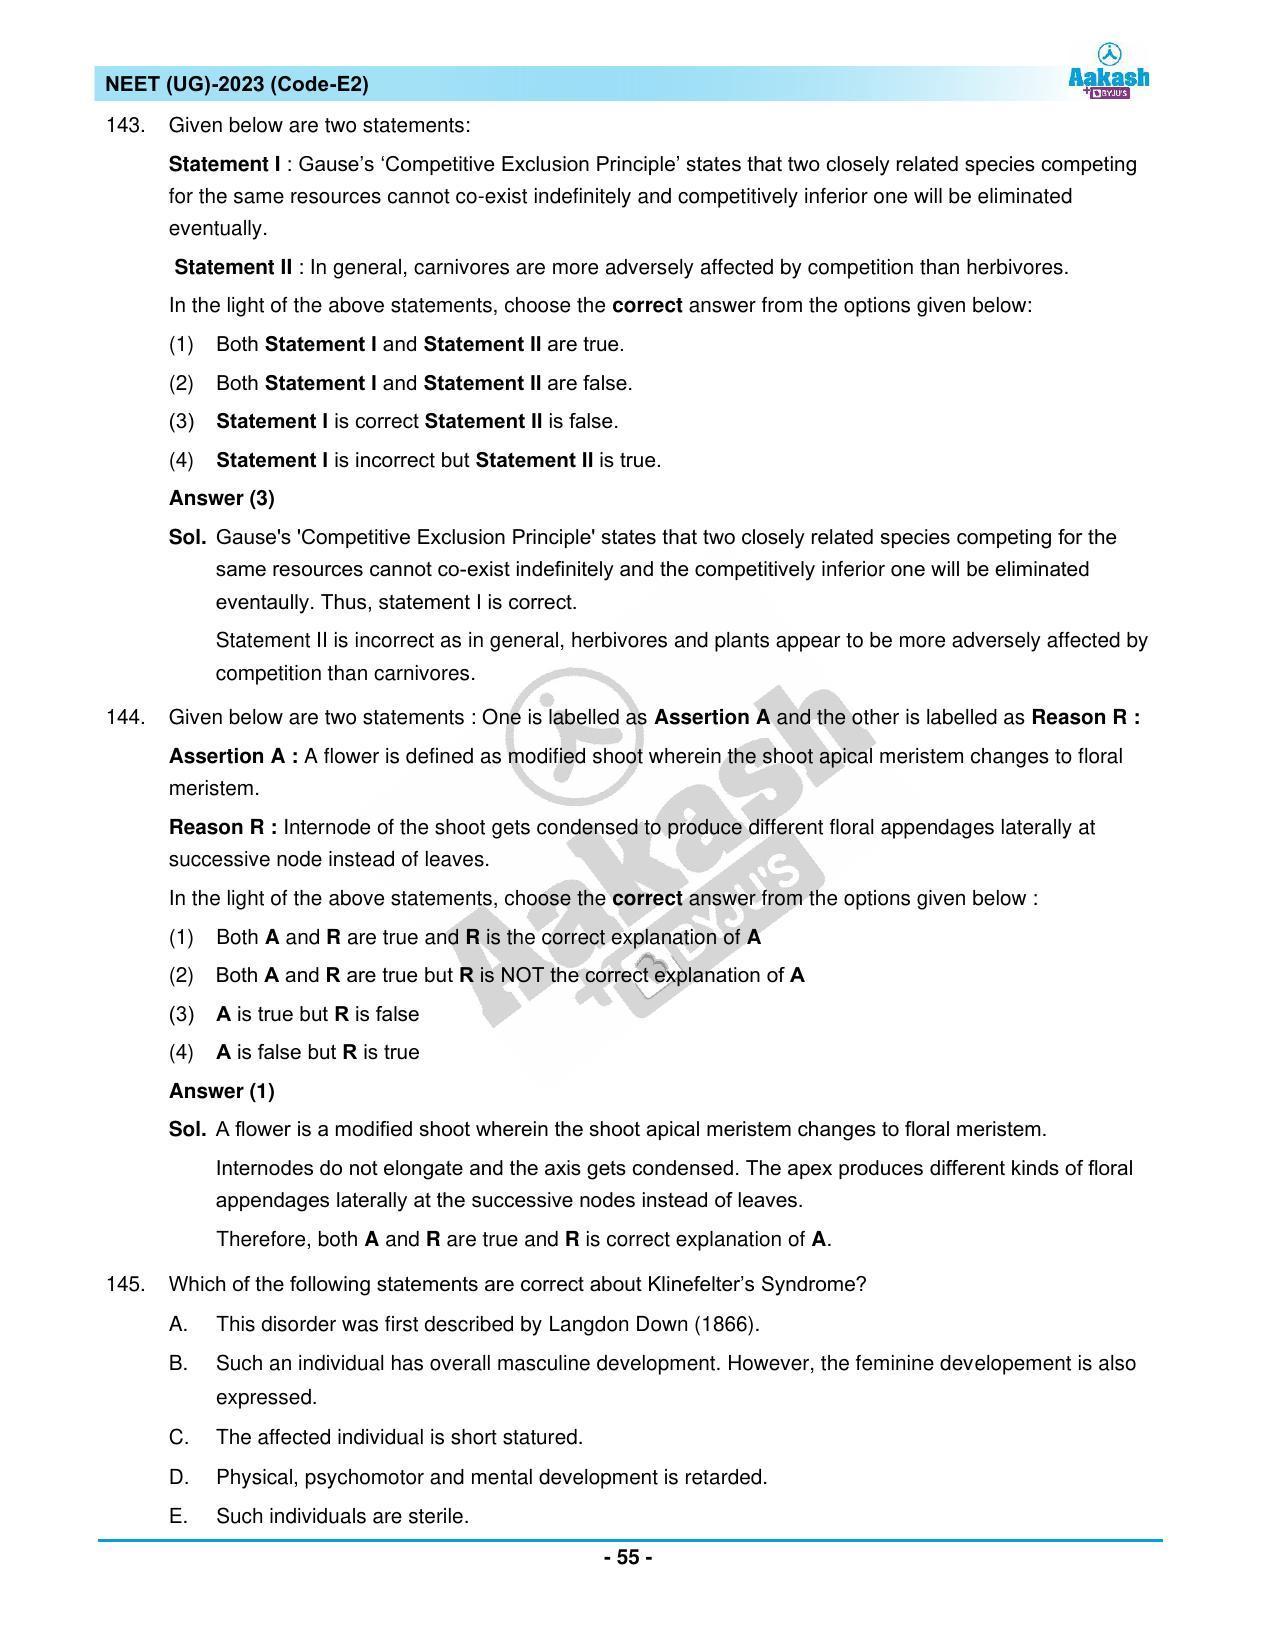 NEET 2023 Question Paper E2 - Page 55